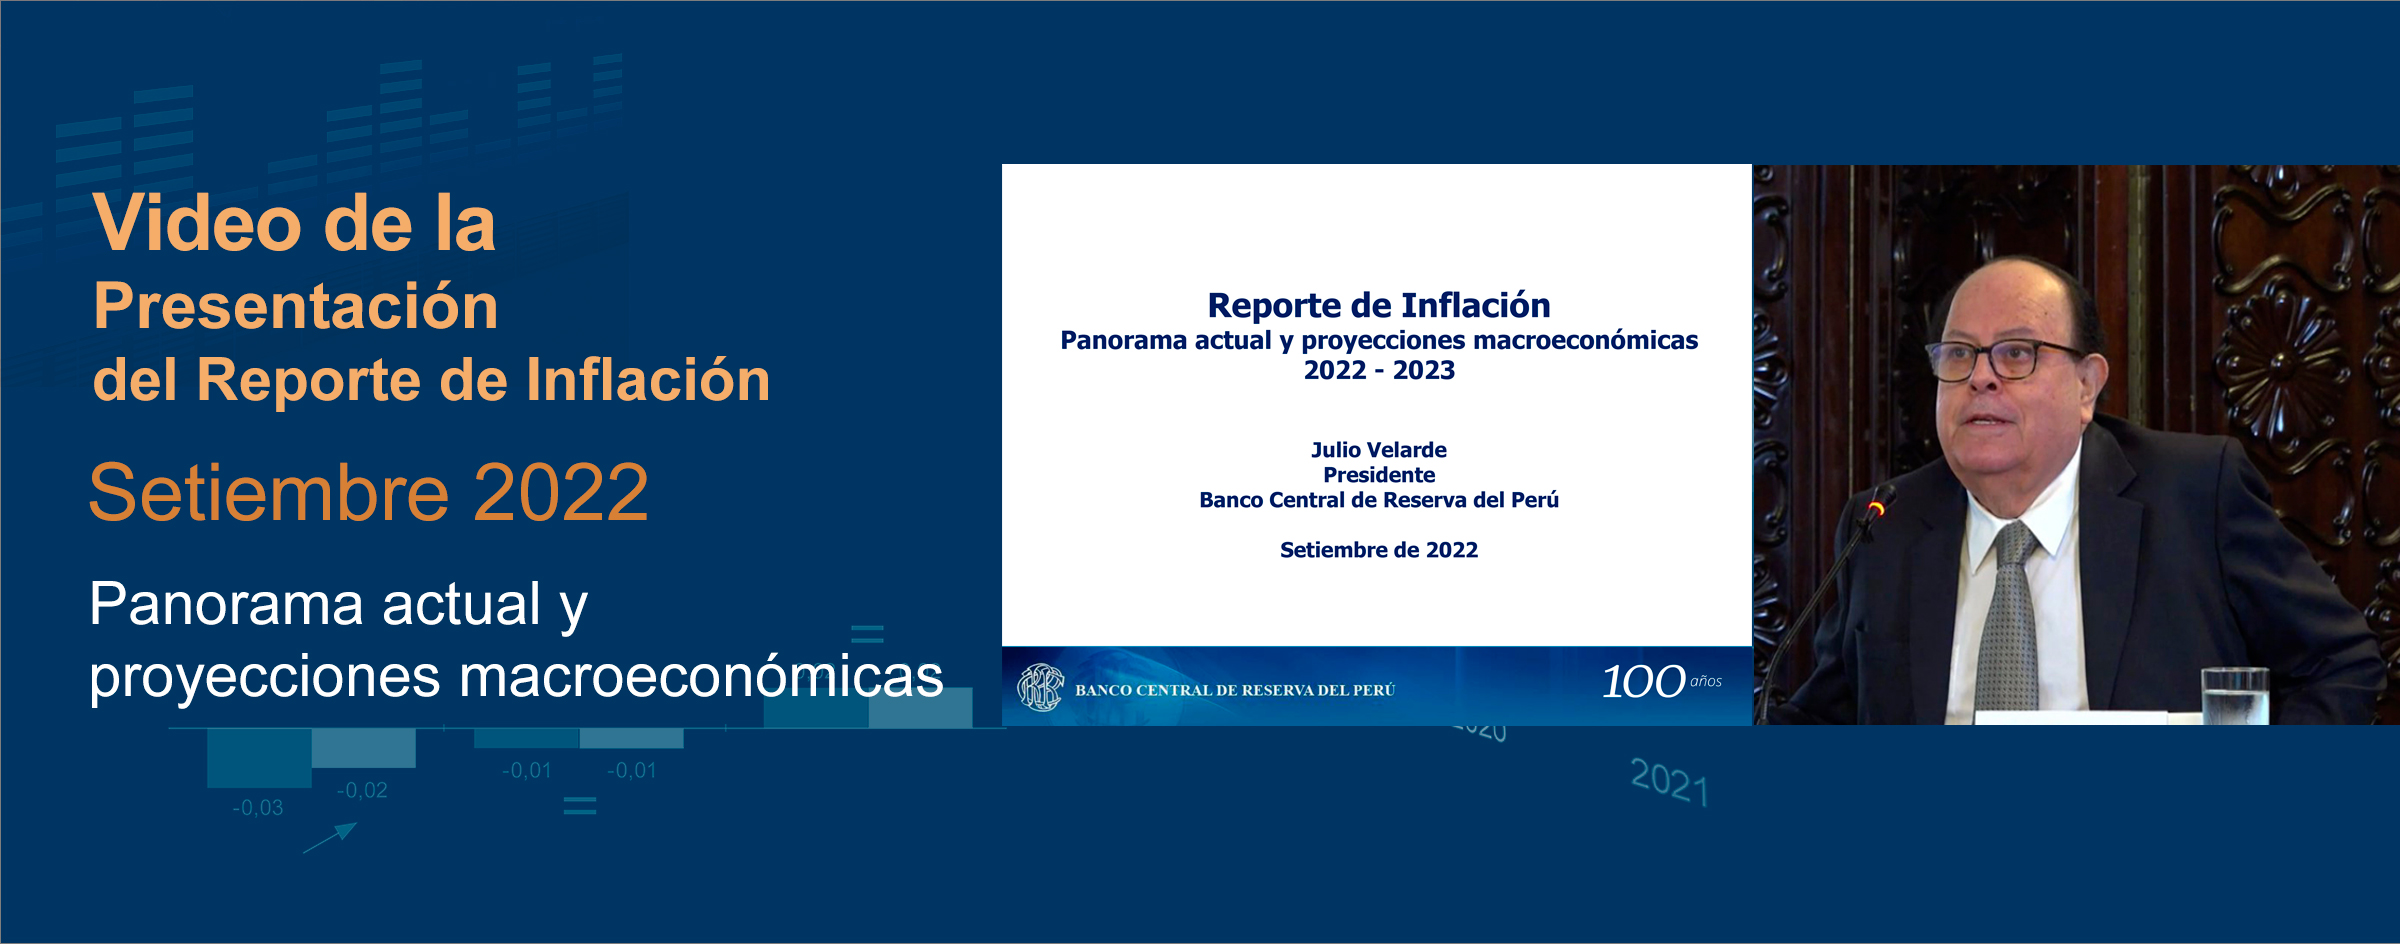 Video de la Presentación del Reporte de Inflación – Setiembre 2022: Panorama actual y proyecciones macroeconómicas